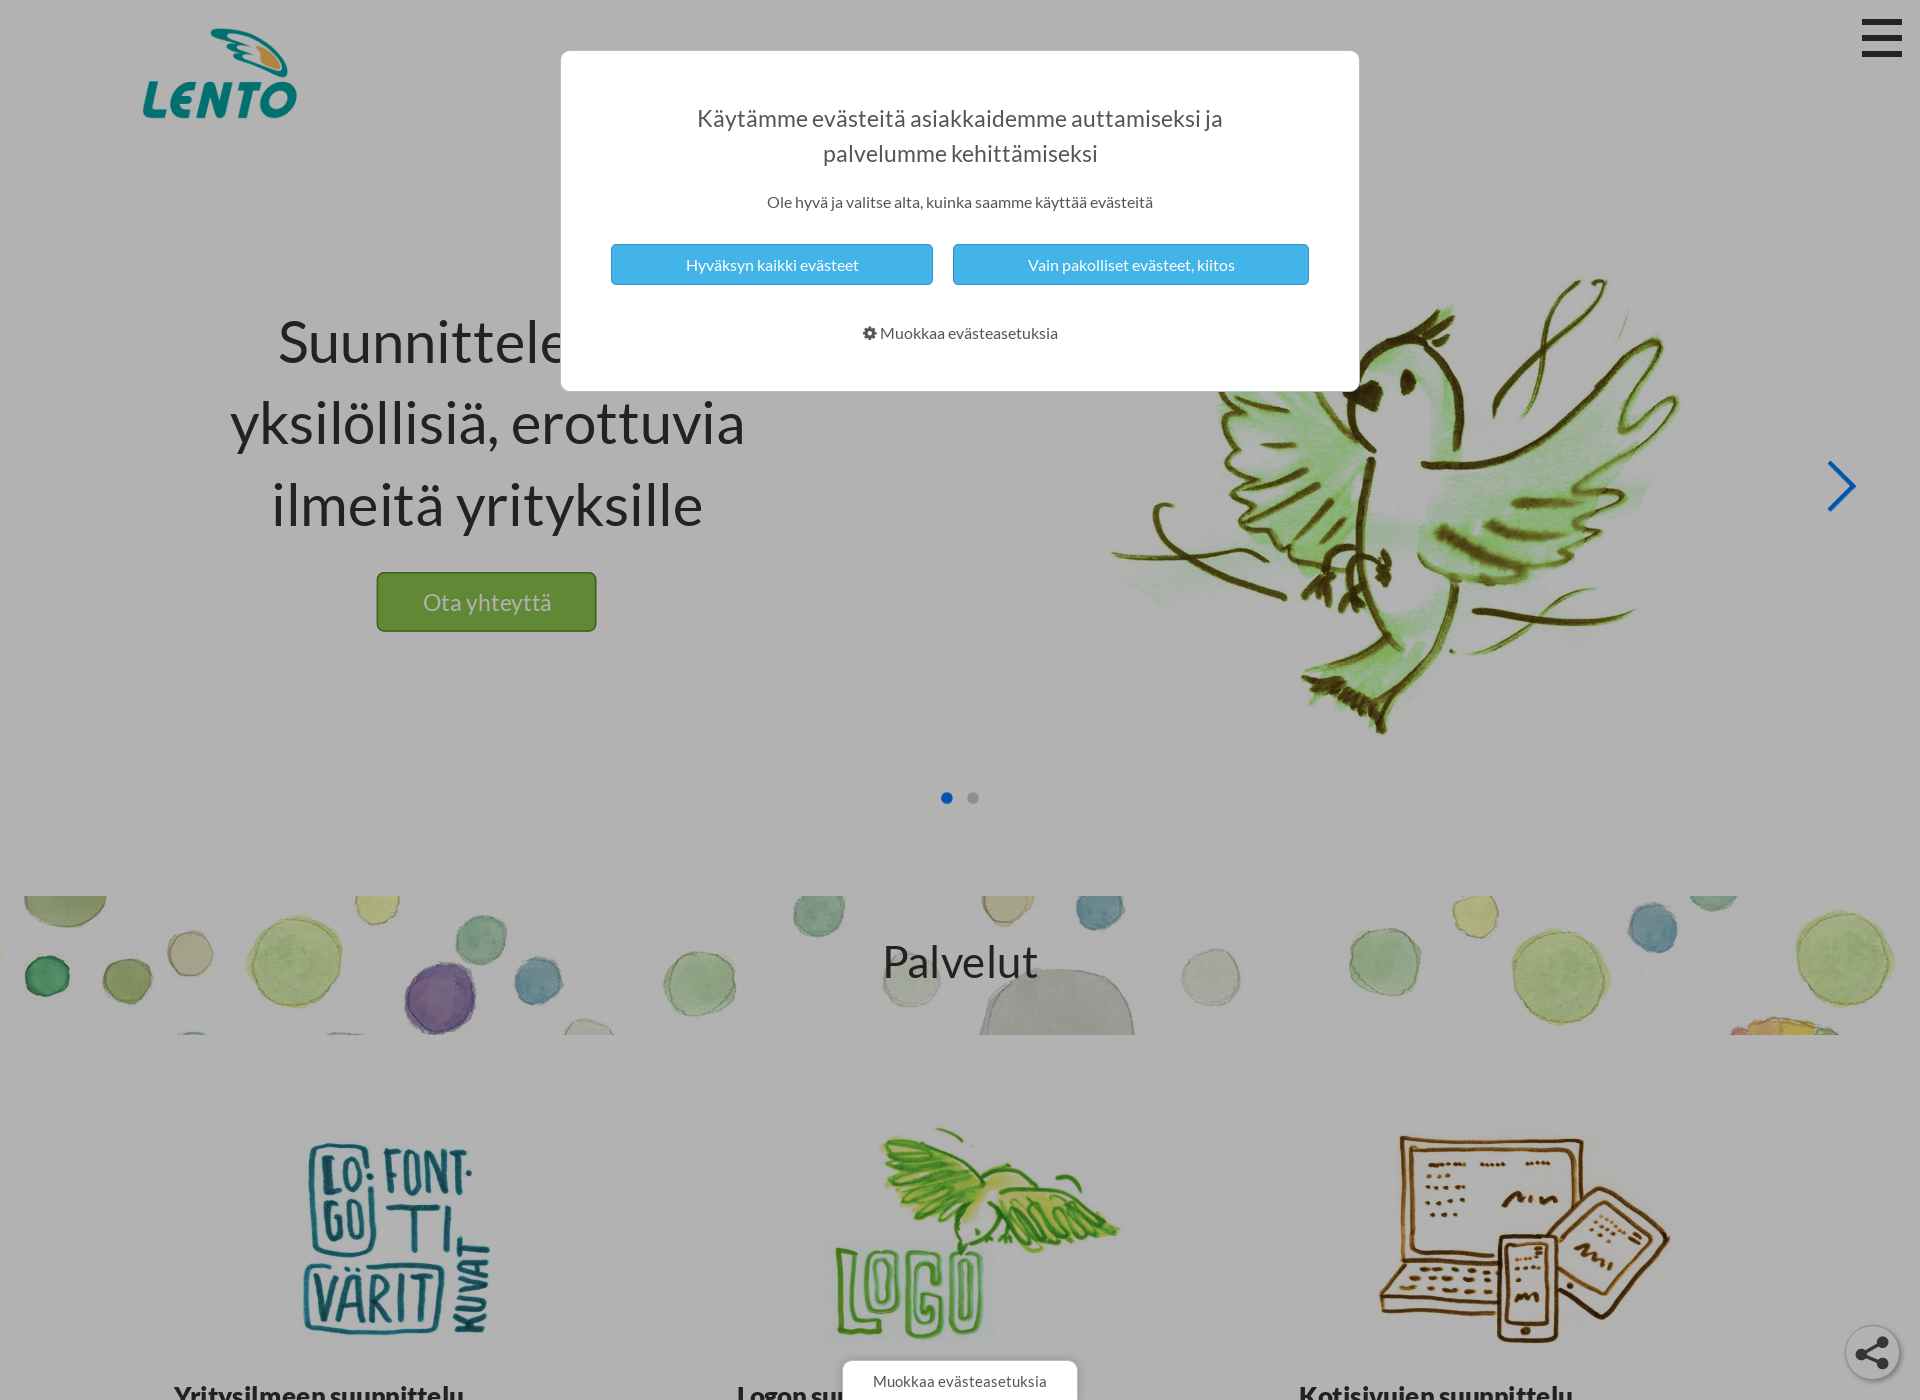 Skärmdump för mainoslento.fi